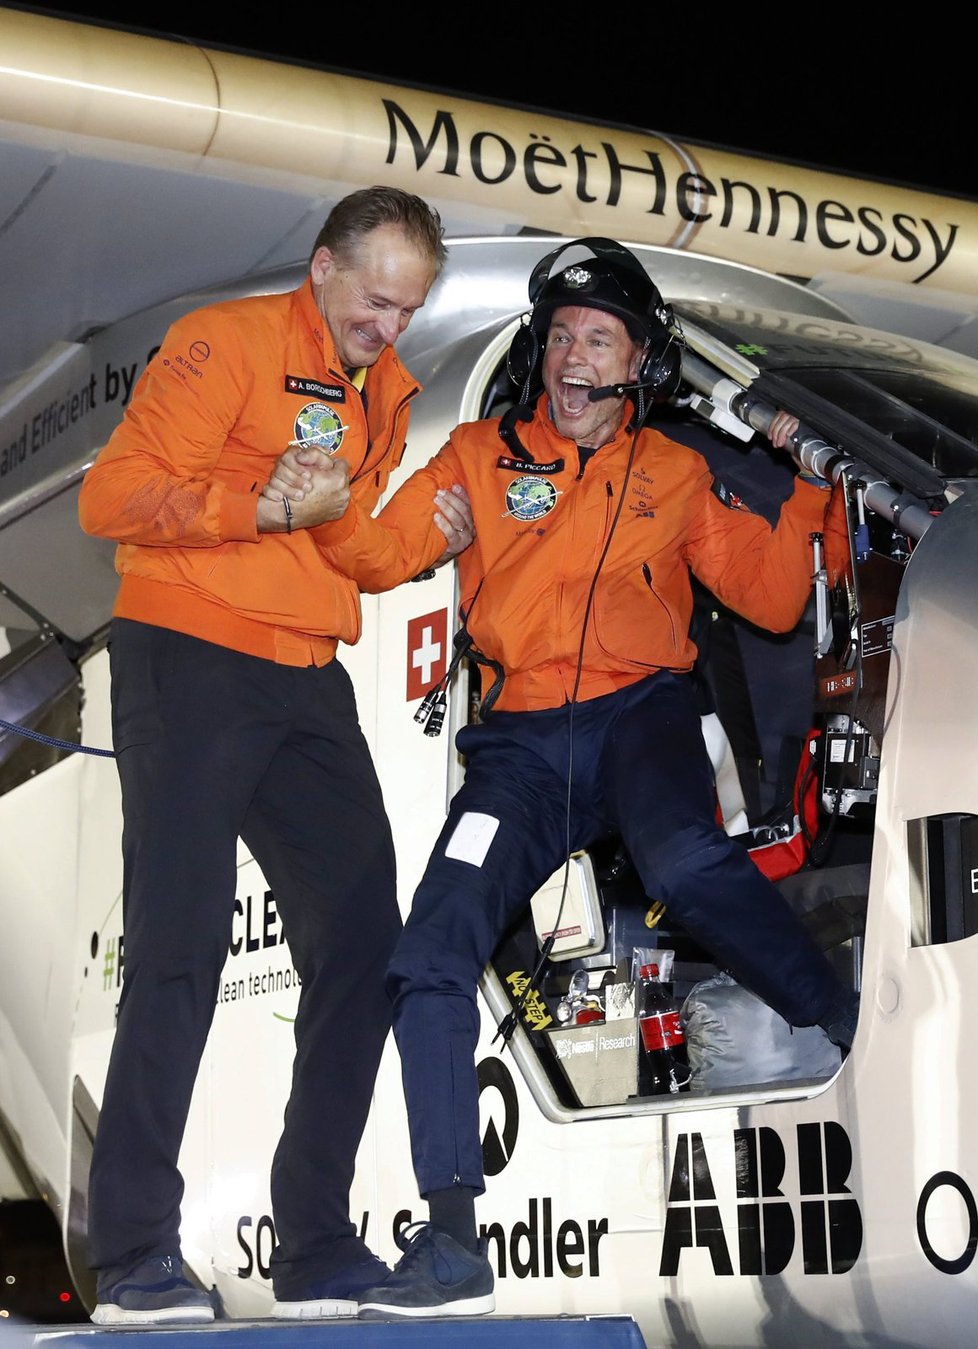 Solární letoun Solar Impulse 2 dokončil oblet světa. Ve vzduchu strávil 500 hodin.